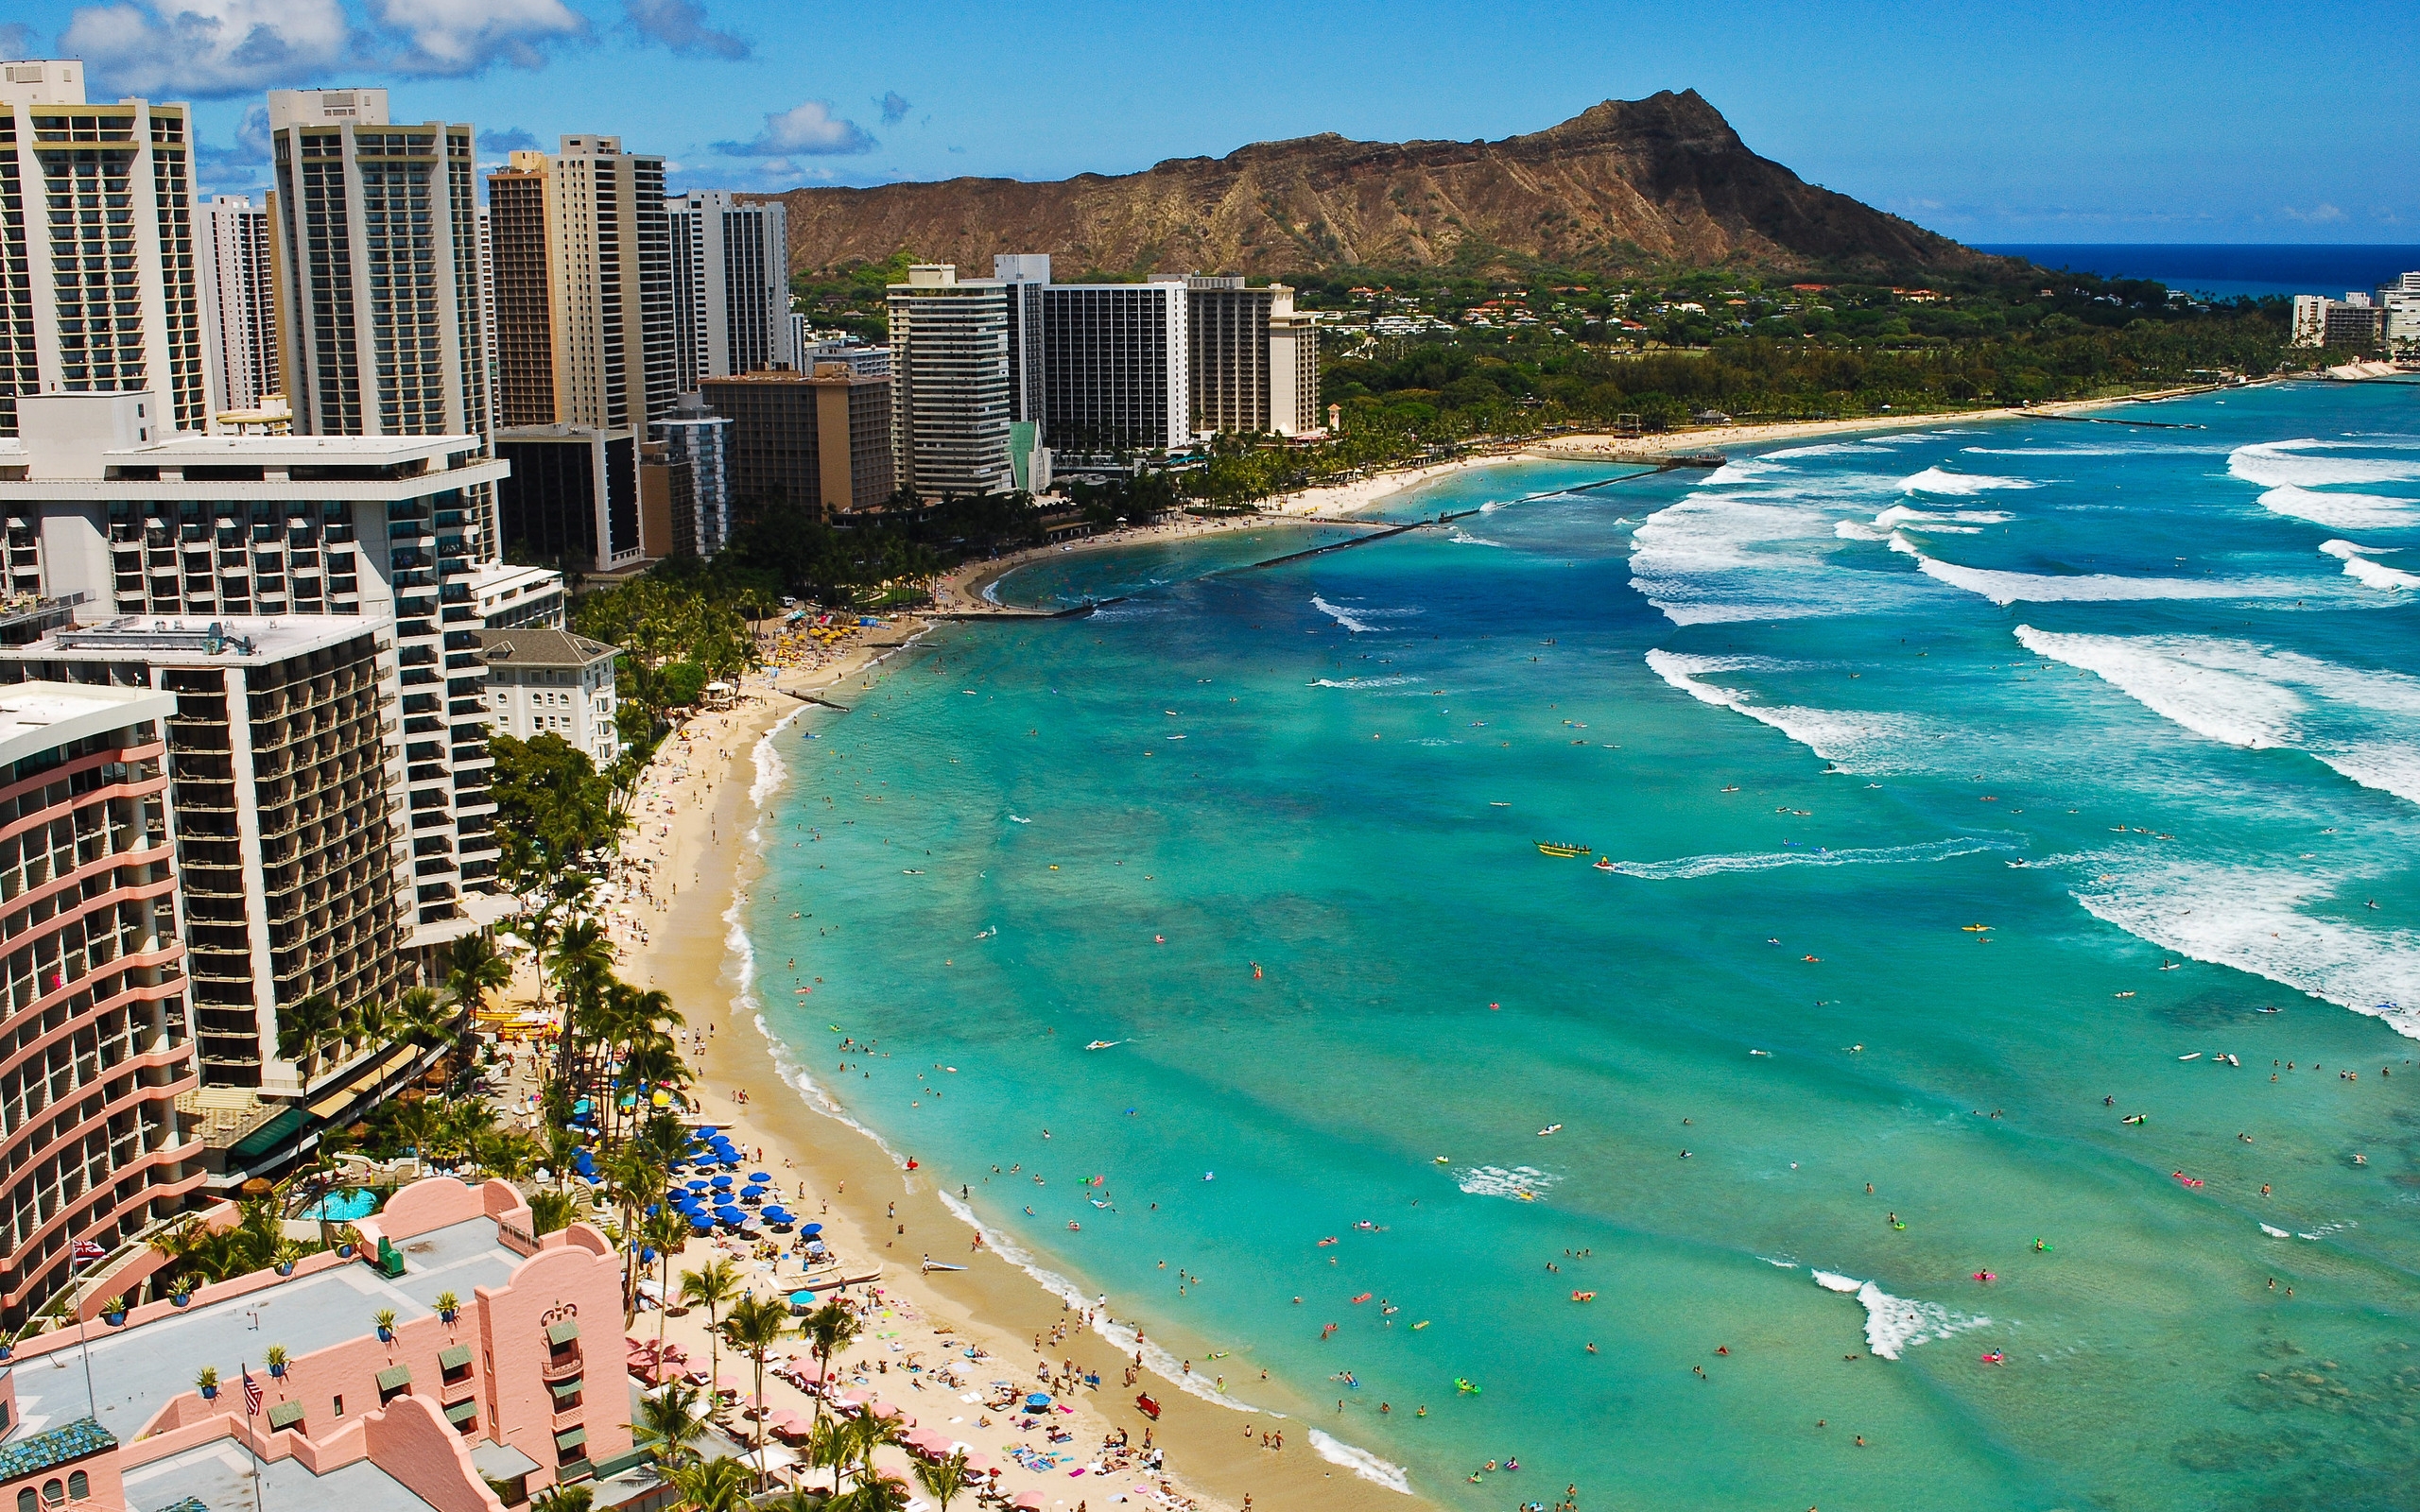 Waikiki Beach Hawaii, for 2560 x 1600 widescreen resolution